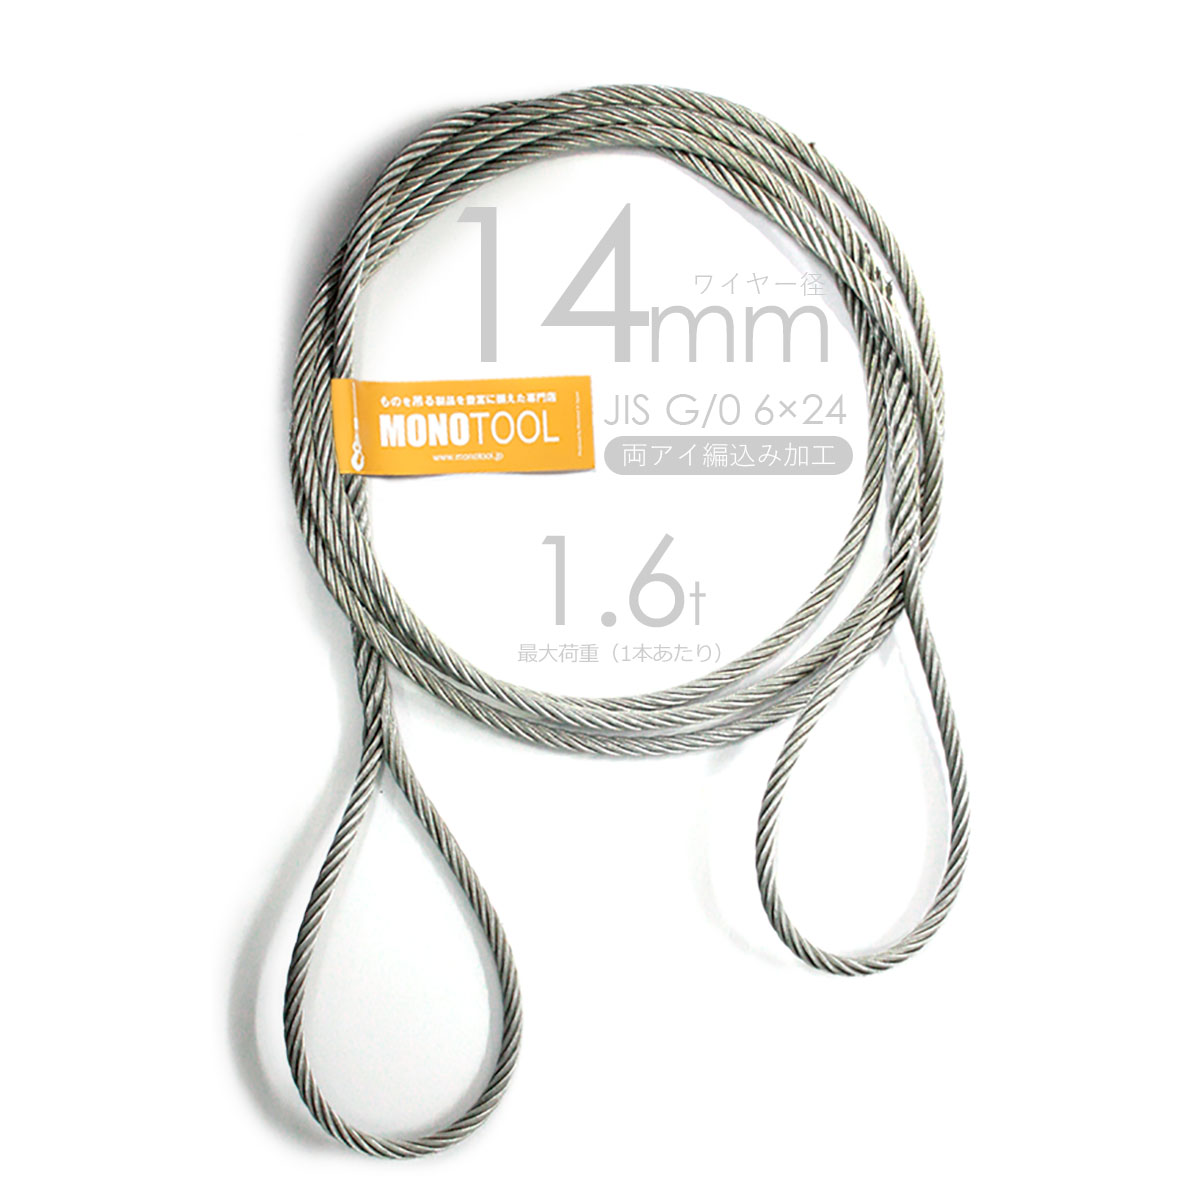 アウトワイヤロープ JIS規格外 6×19G/O 径3.5mm 長さ200m